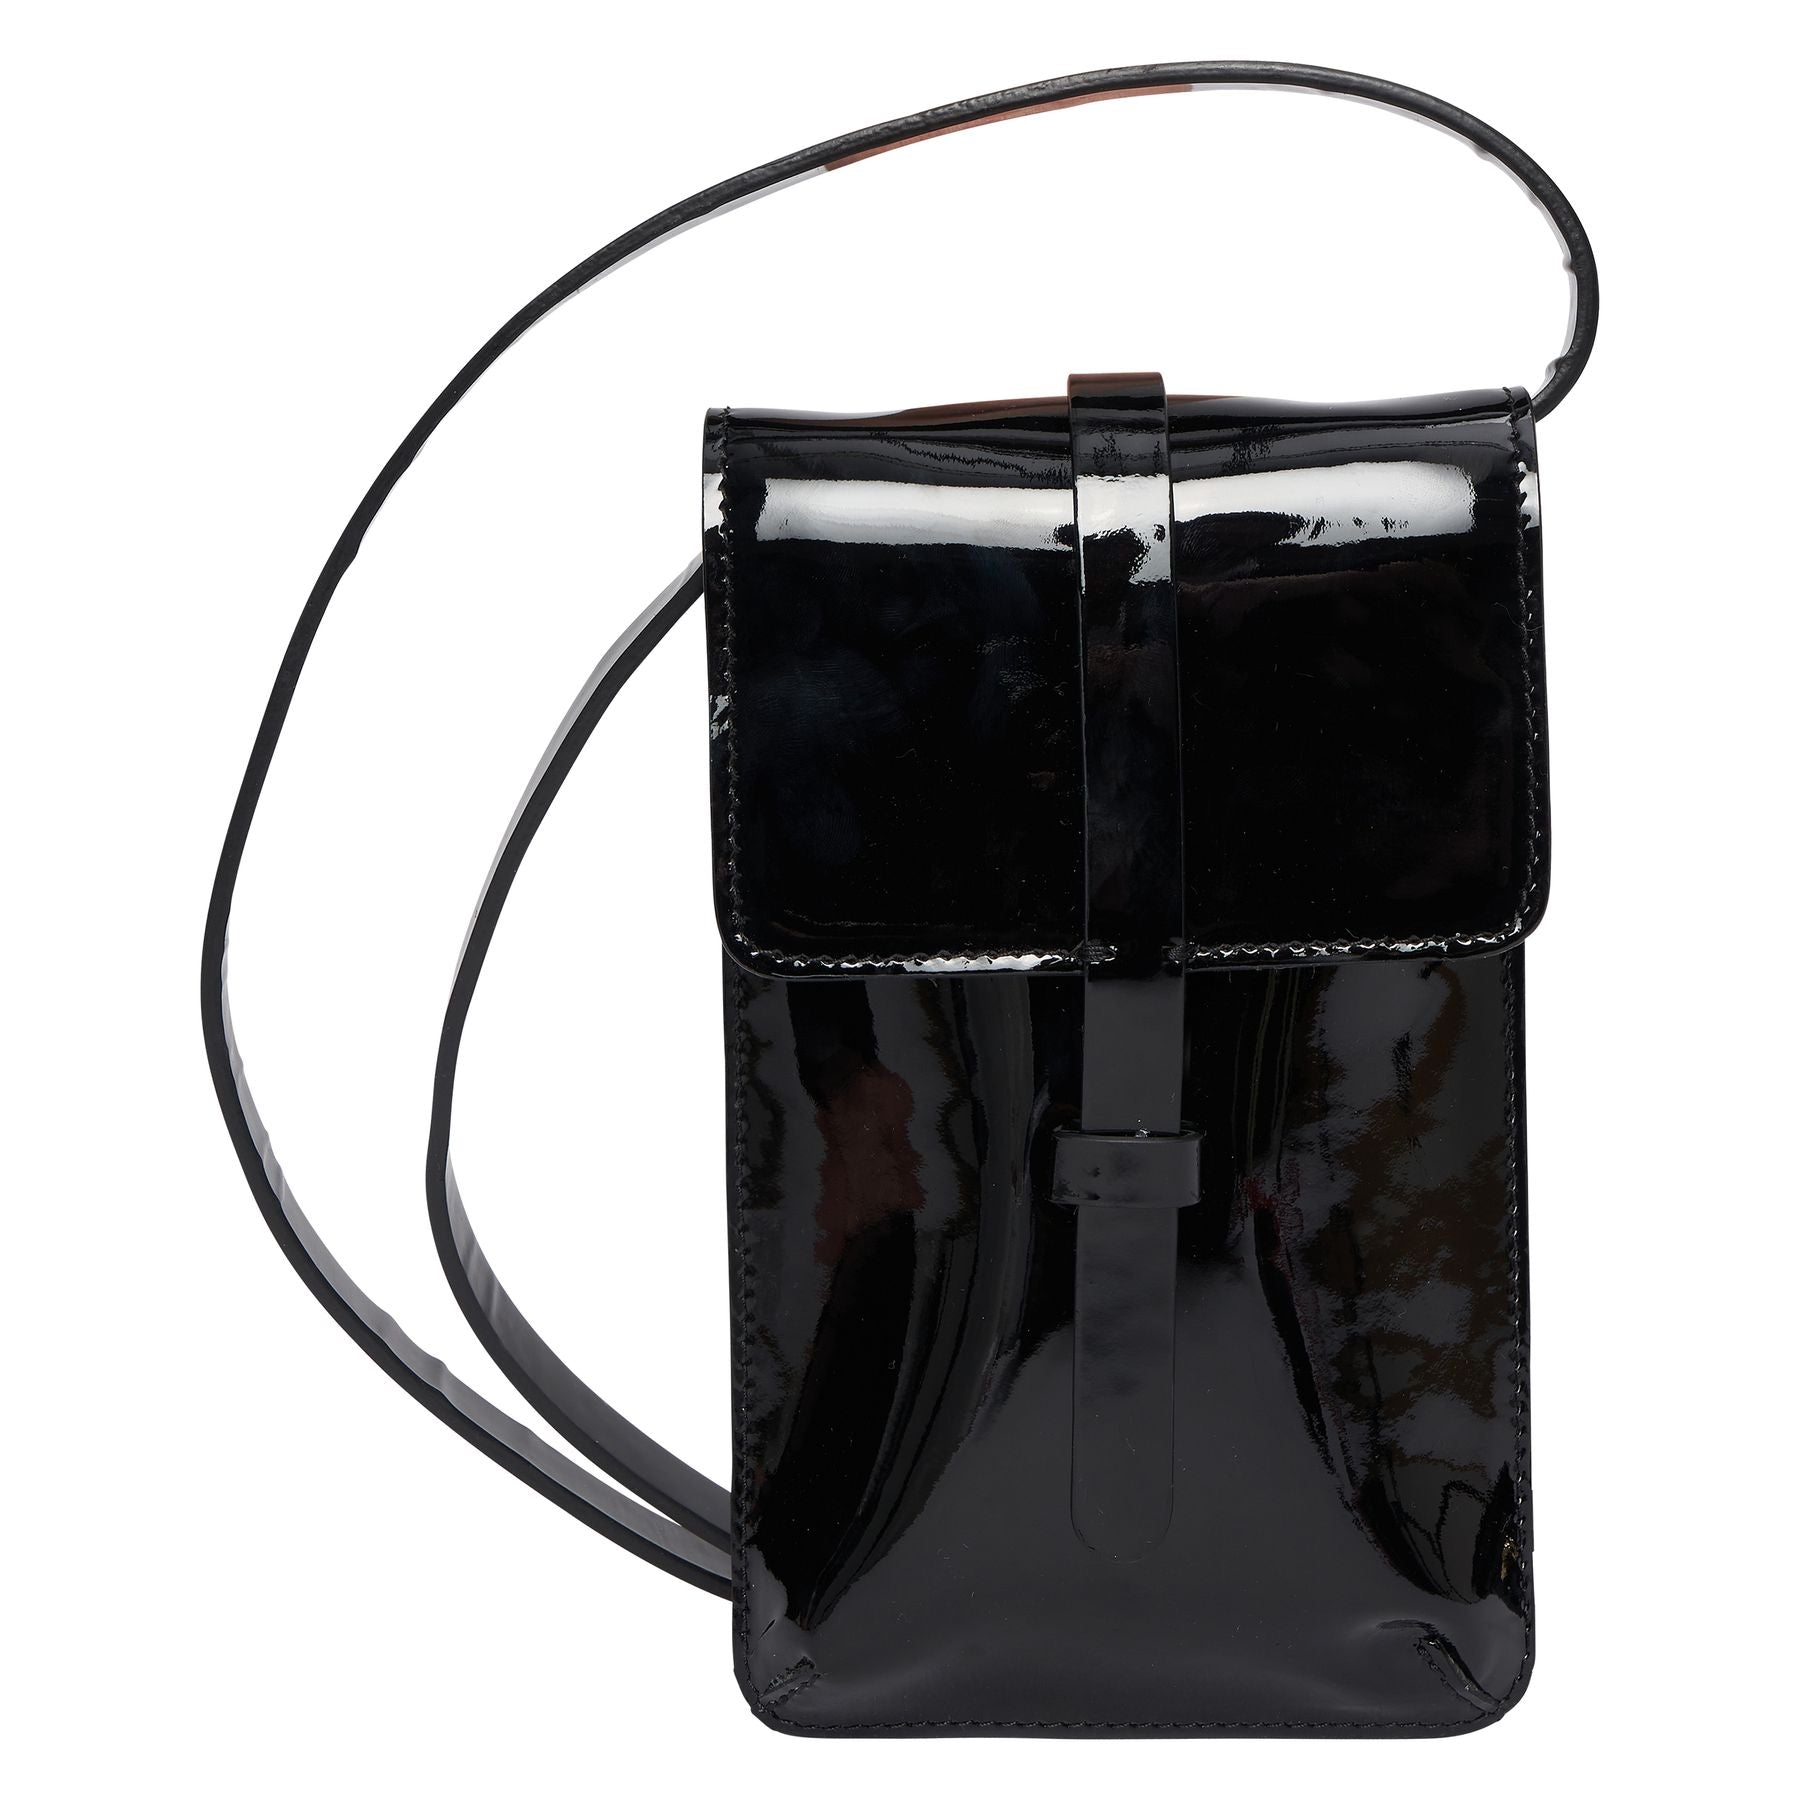 smartphone-bag-leonore-pelle-vetro-nero